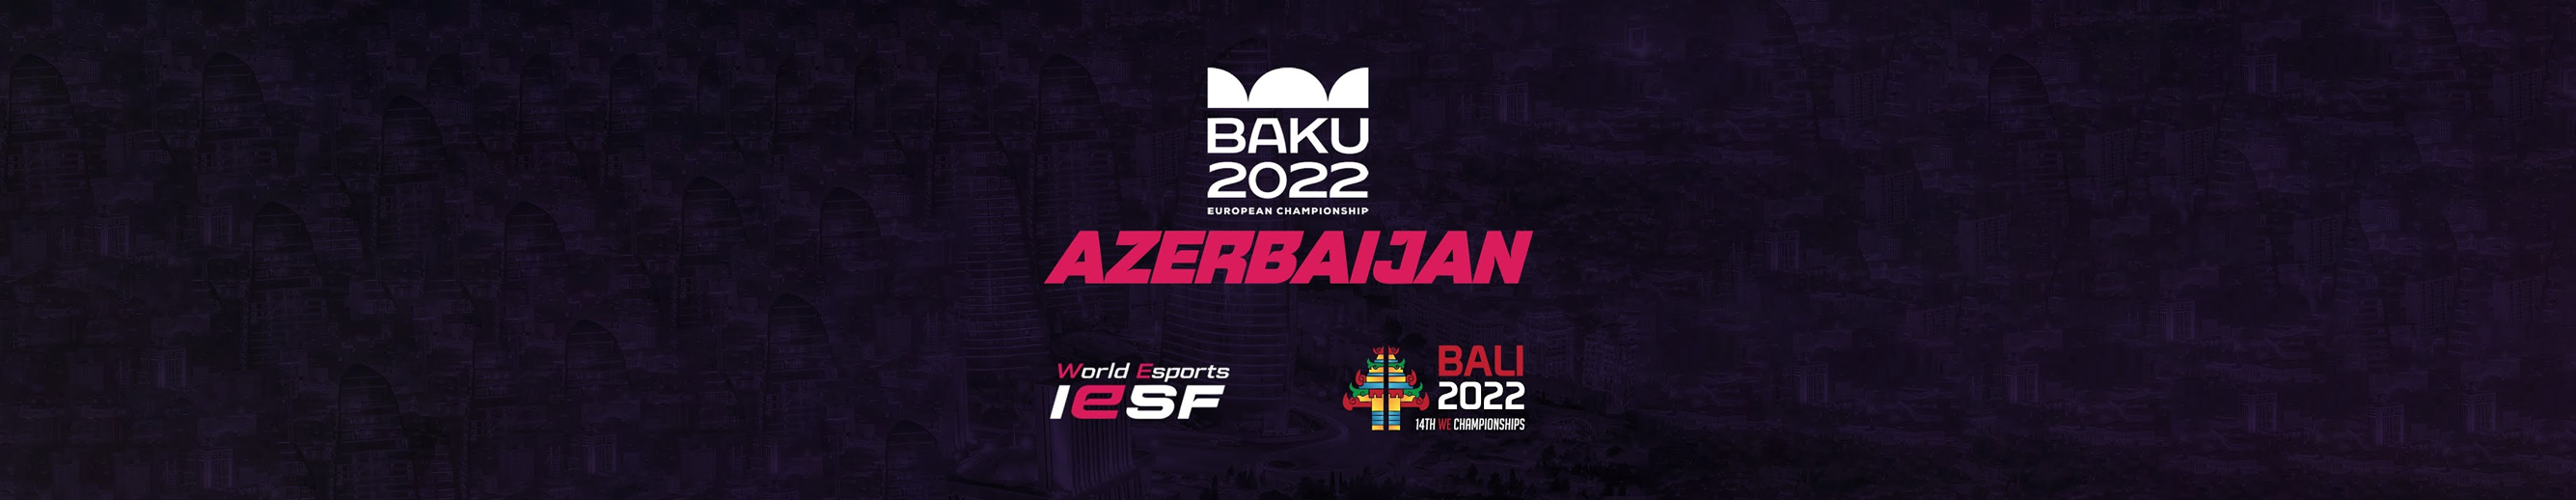 BAKU-2022-Banner